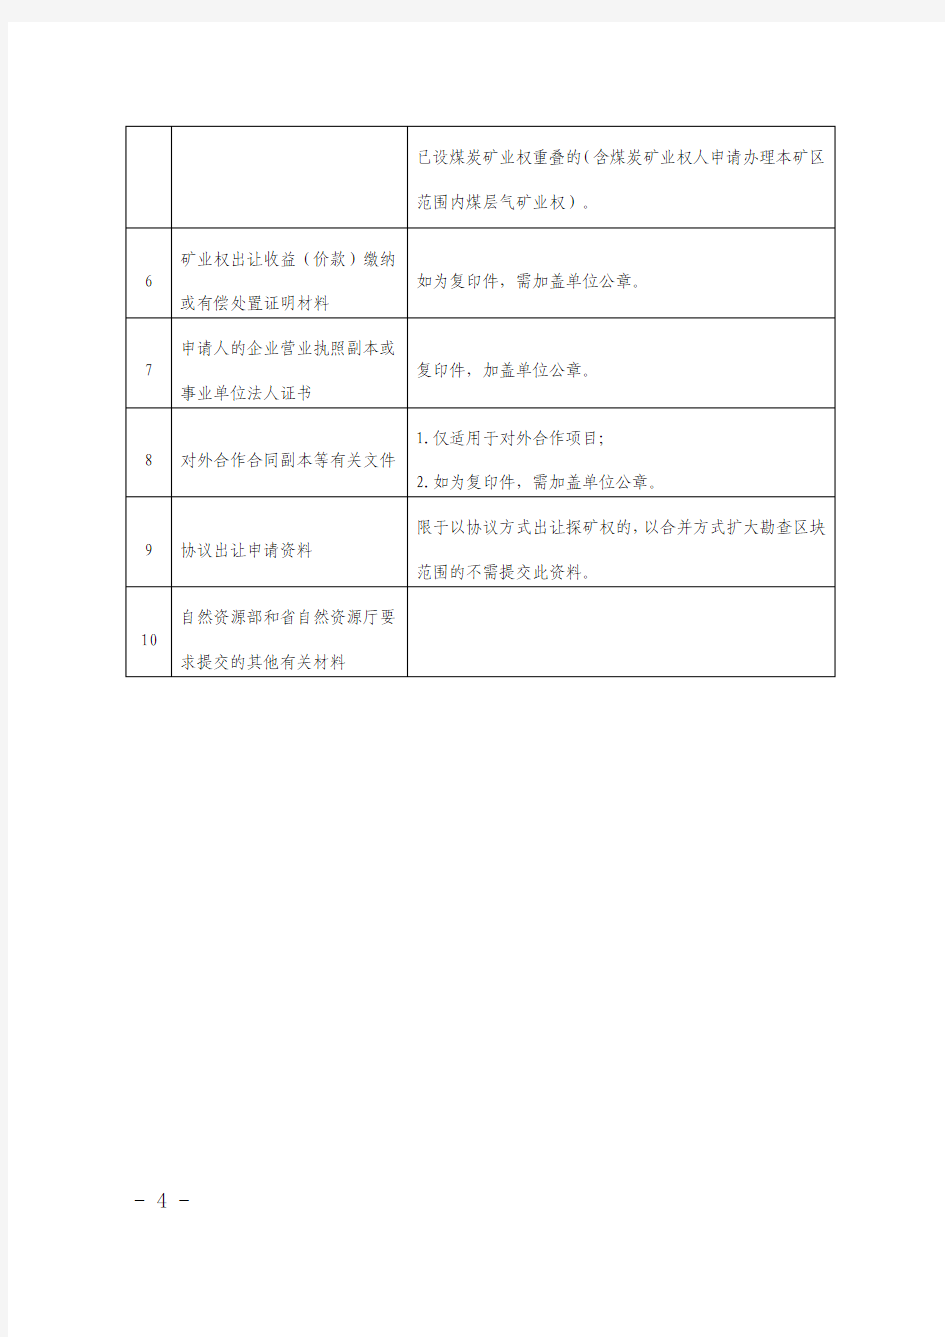 山西省煤层气矿业权申请资料清单及有关要求(2019年版)